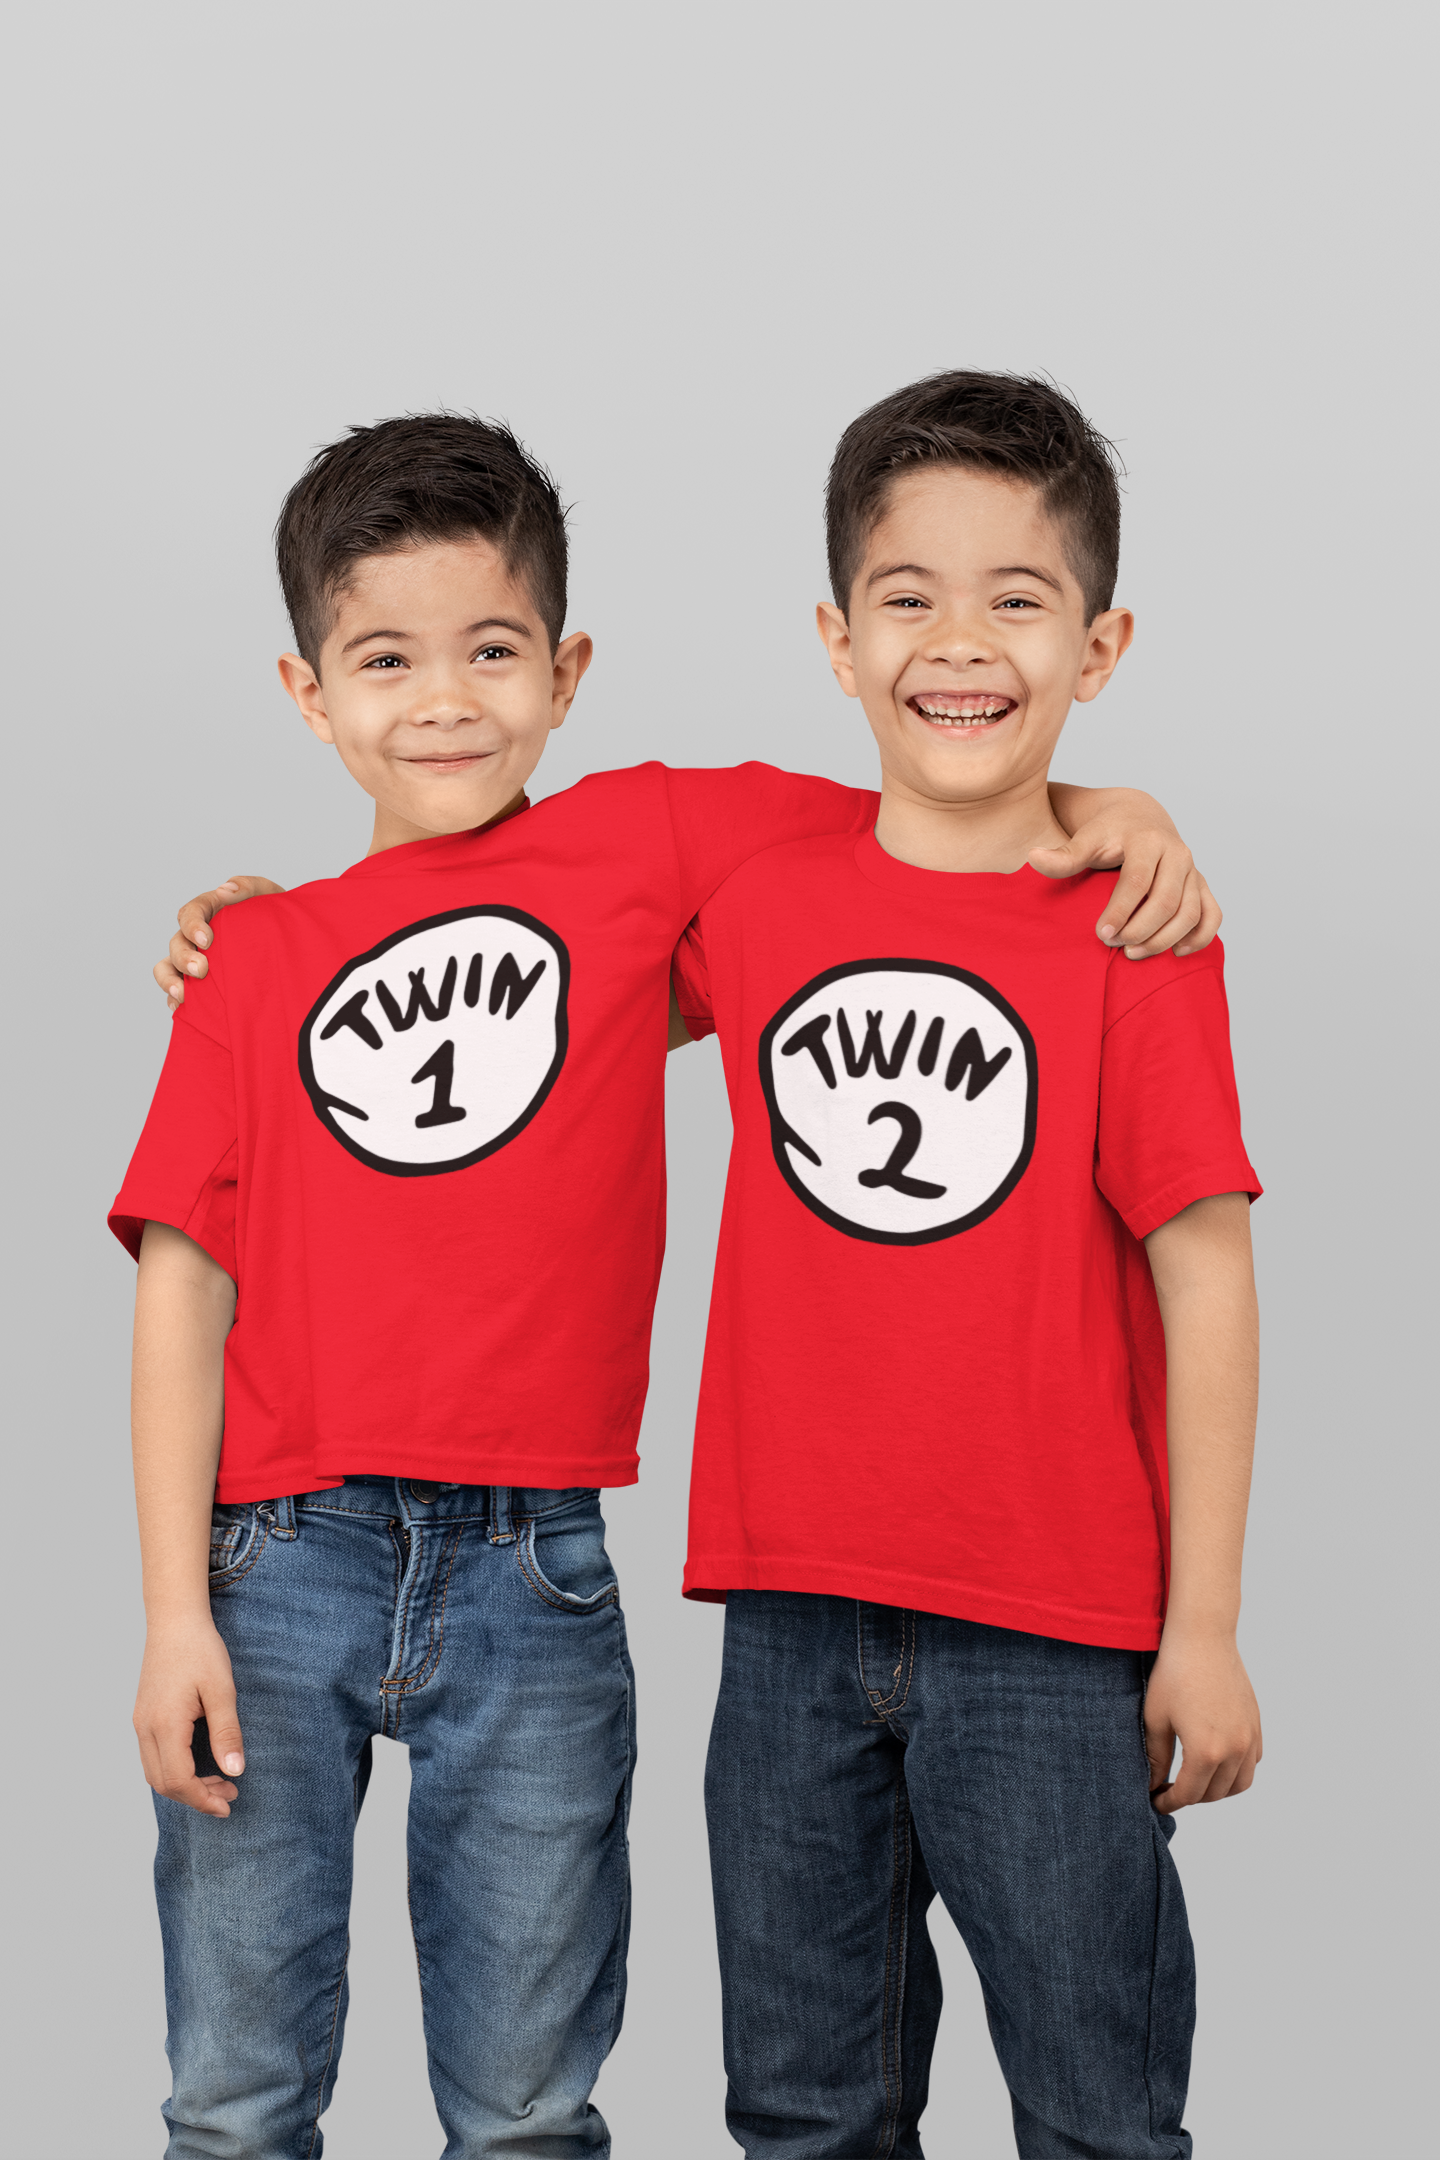 Twin Shirts, Twining Shirt, Twin 1, Twin 2 Shirt